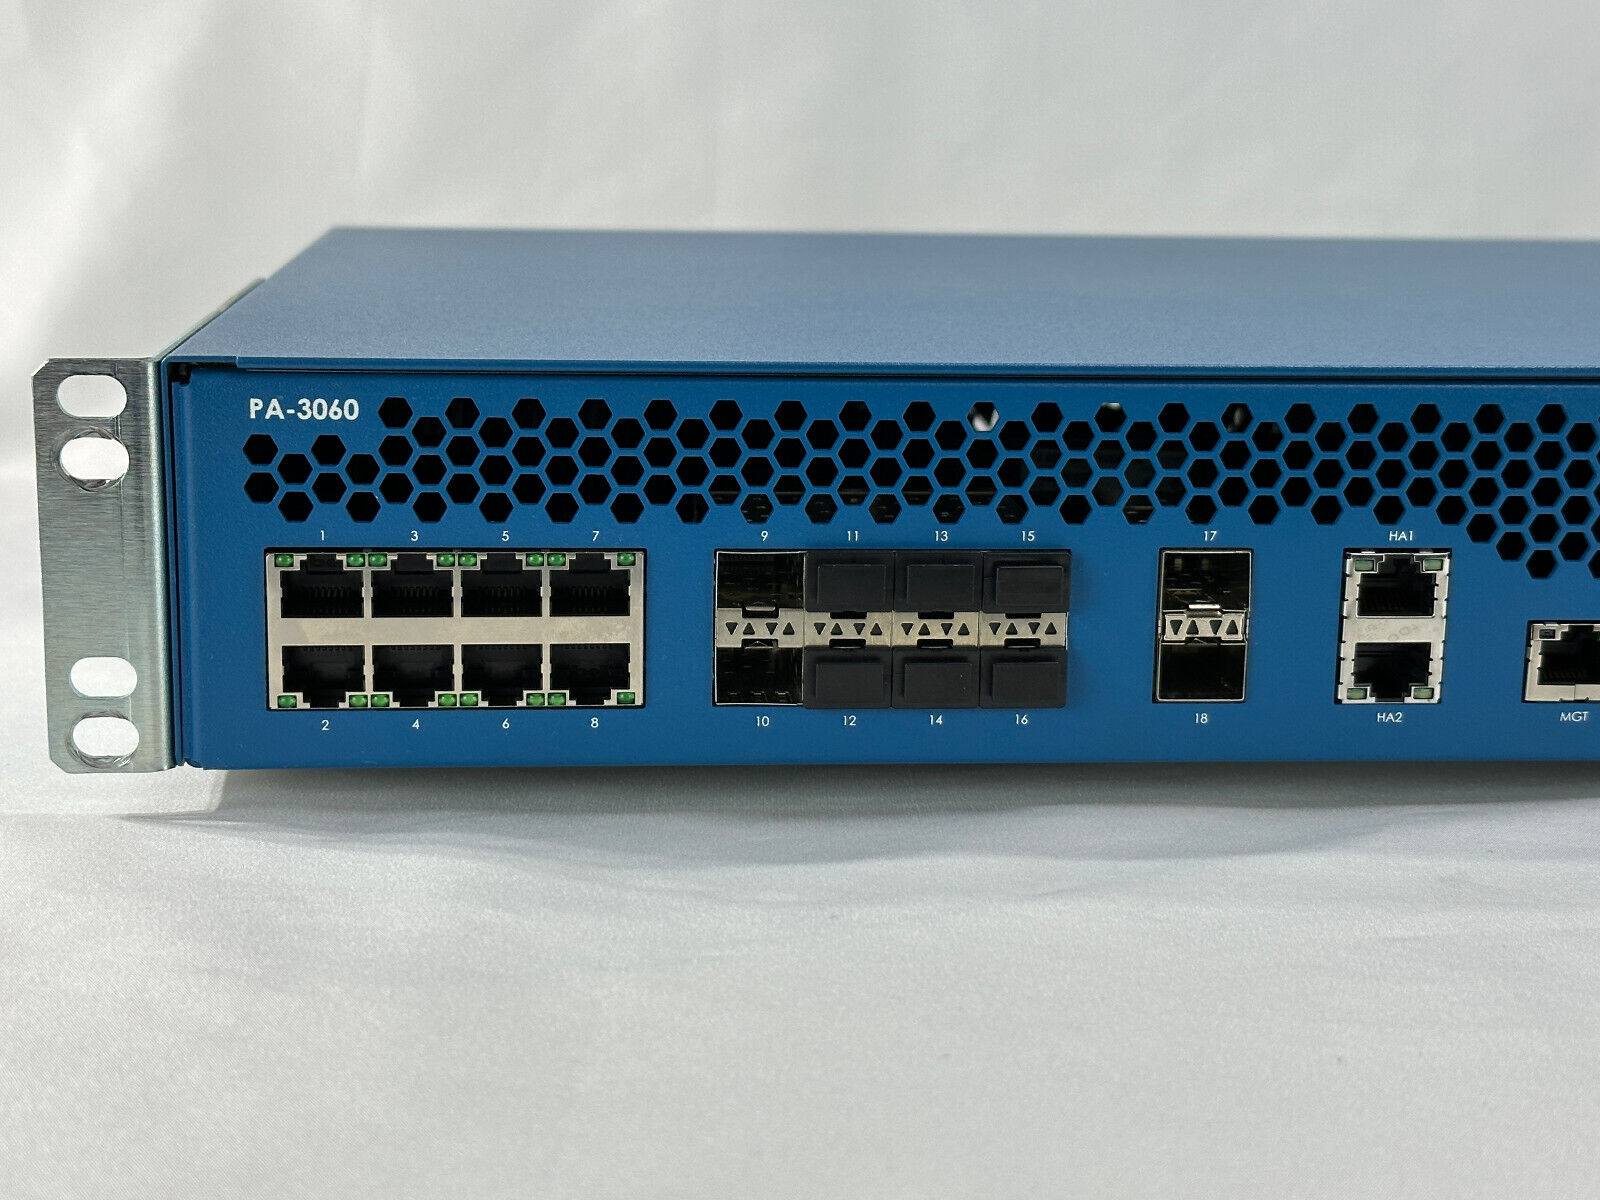 Palo Alto PA-3060 DPS-500WB-2 B High-Speed Internet Gateway Router Firewall VPN 1/10GbE 2x PSU.